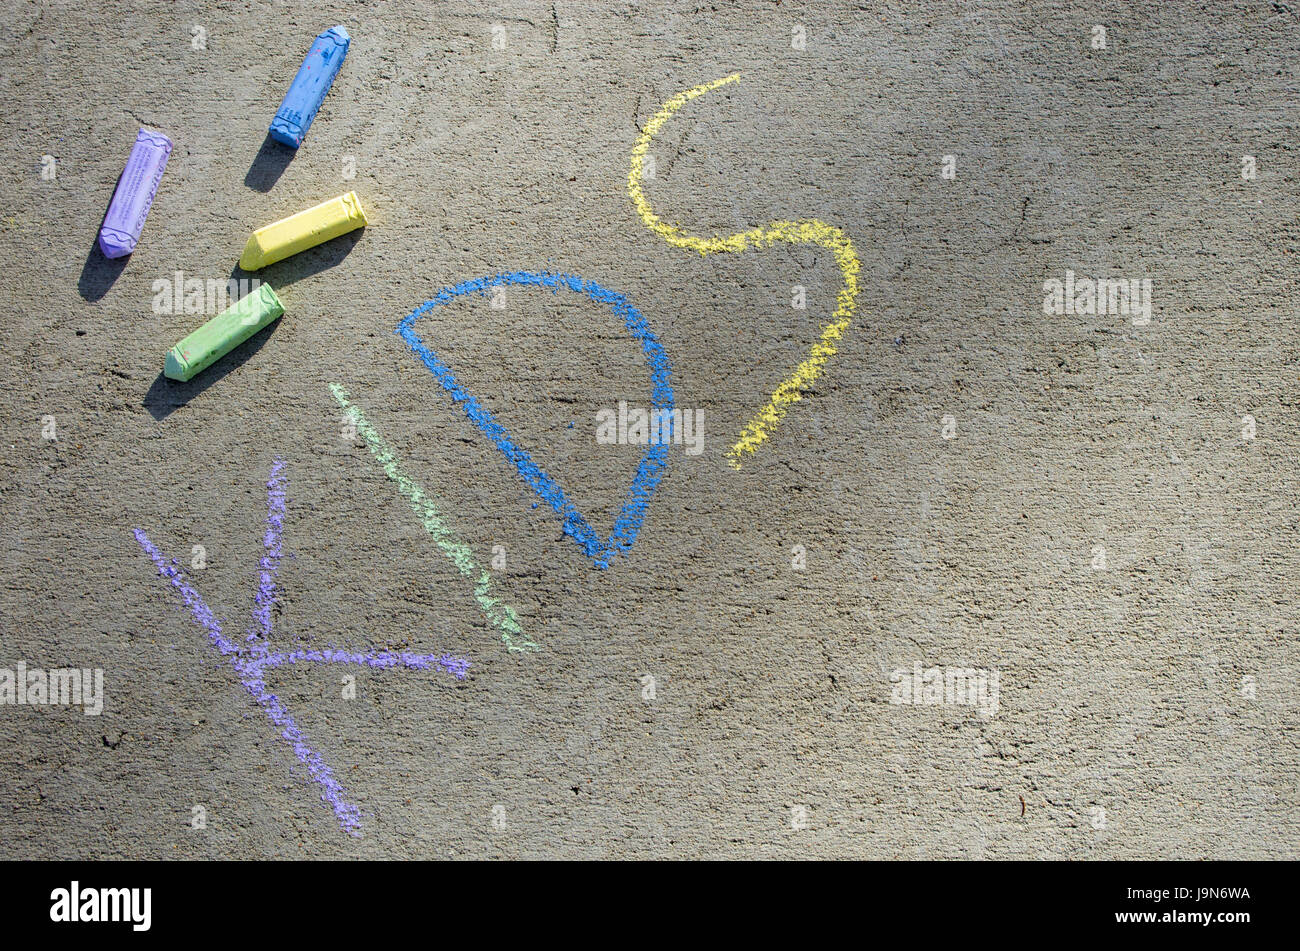 Enfants grand écrit sur trottoir en craie coloré avec de la craie dispersés dans l'image Banque D'Images